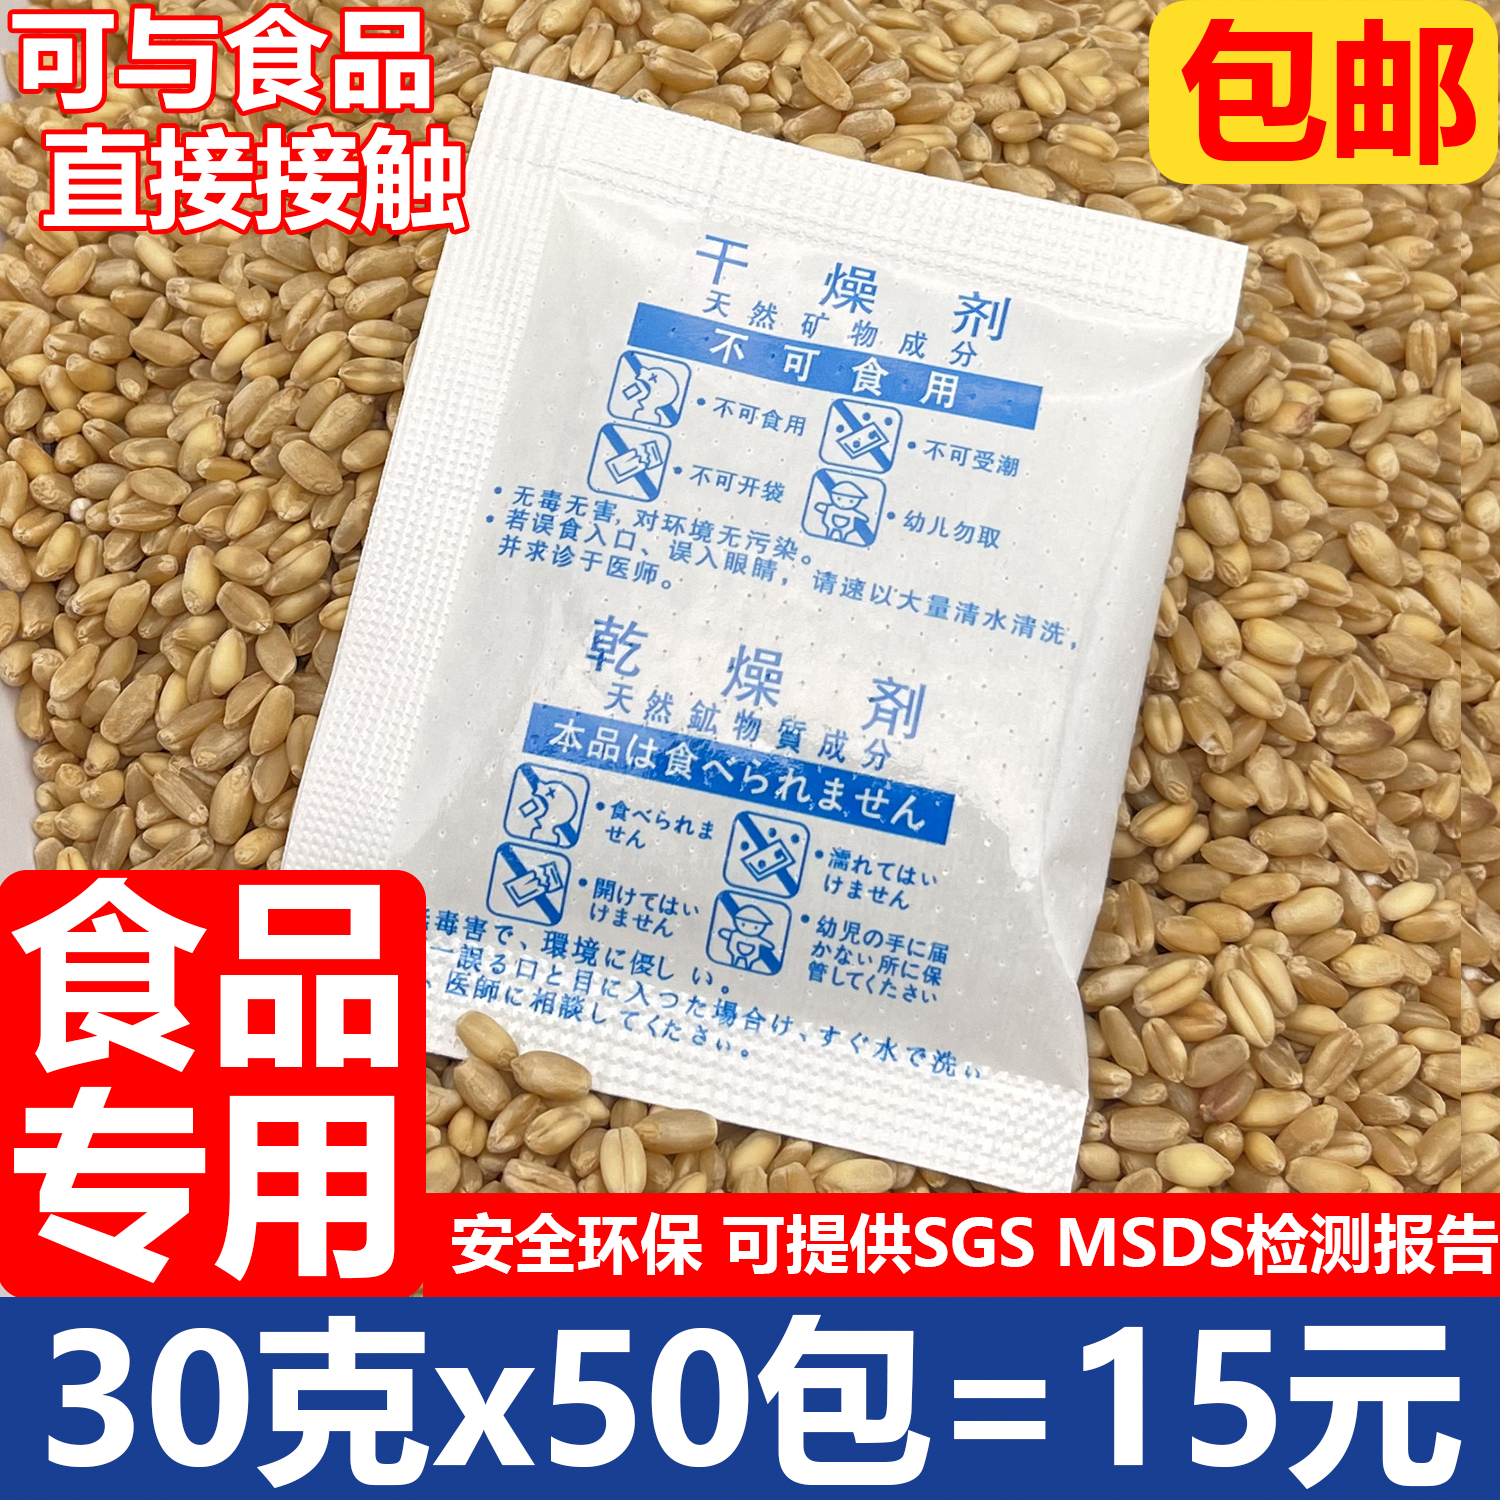 30克20克食品专用干燥剂防潮防霉茶叶大米面粉坚果杂粮狗粮猫重复